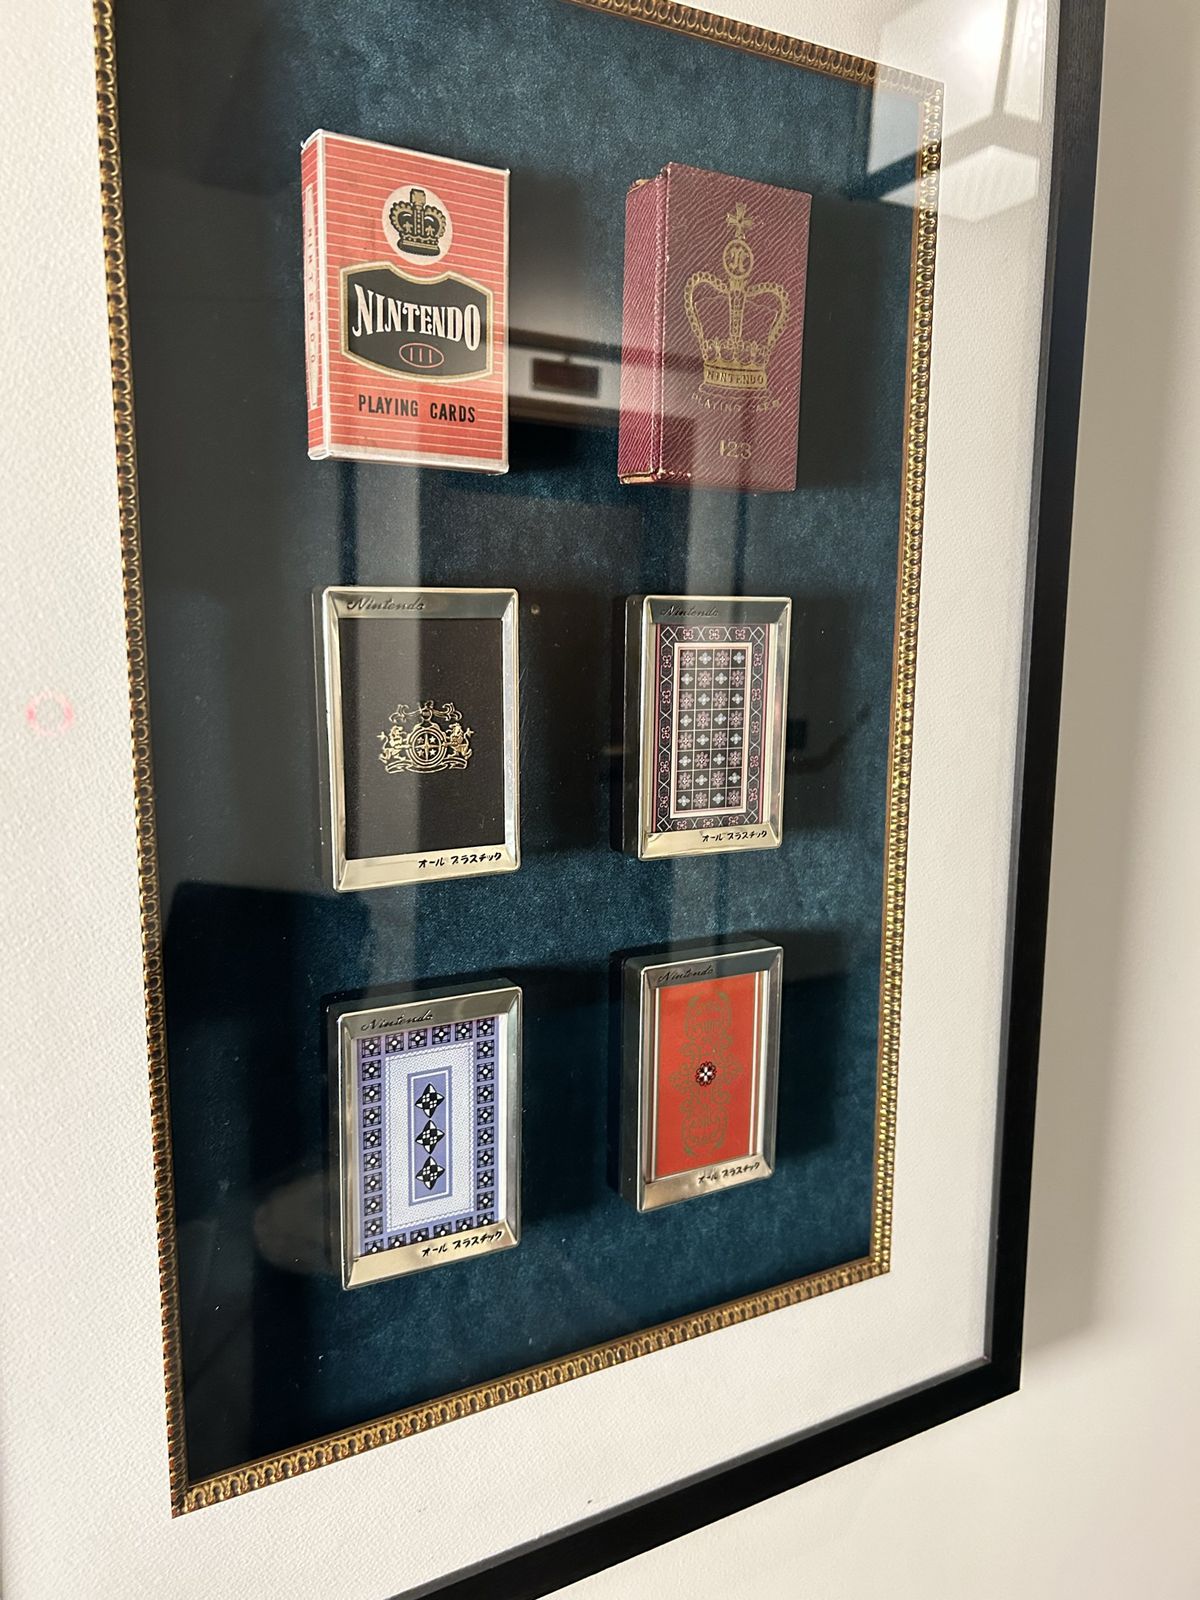 Bộ sưu tập các lá bài cổ điển từ những ngày Nintendo còn là công ty sản xuất thẻ bài, được trưng bày dưới kính tại Marufukuro ở Kyoto